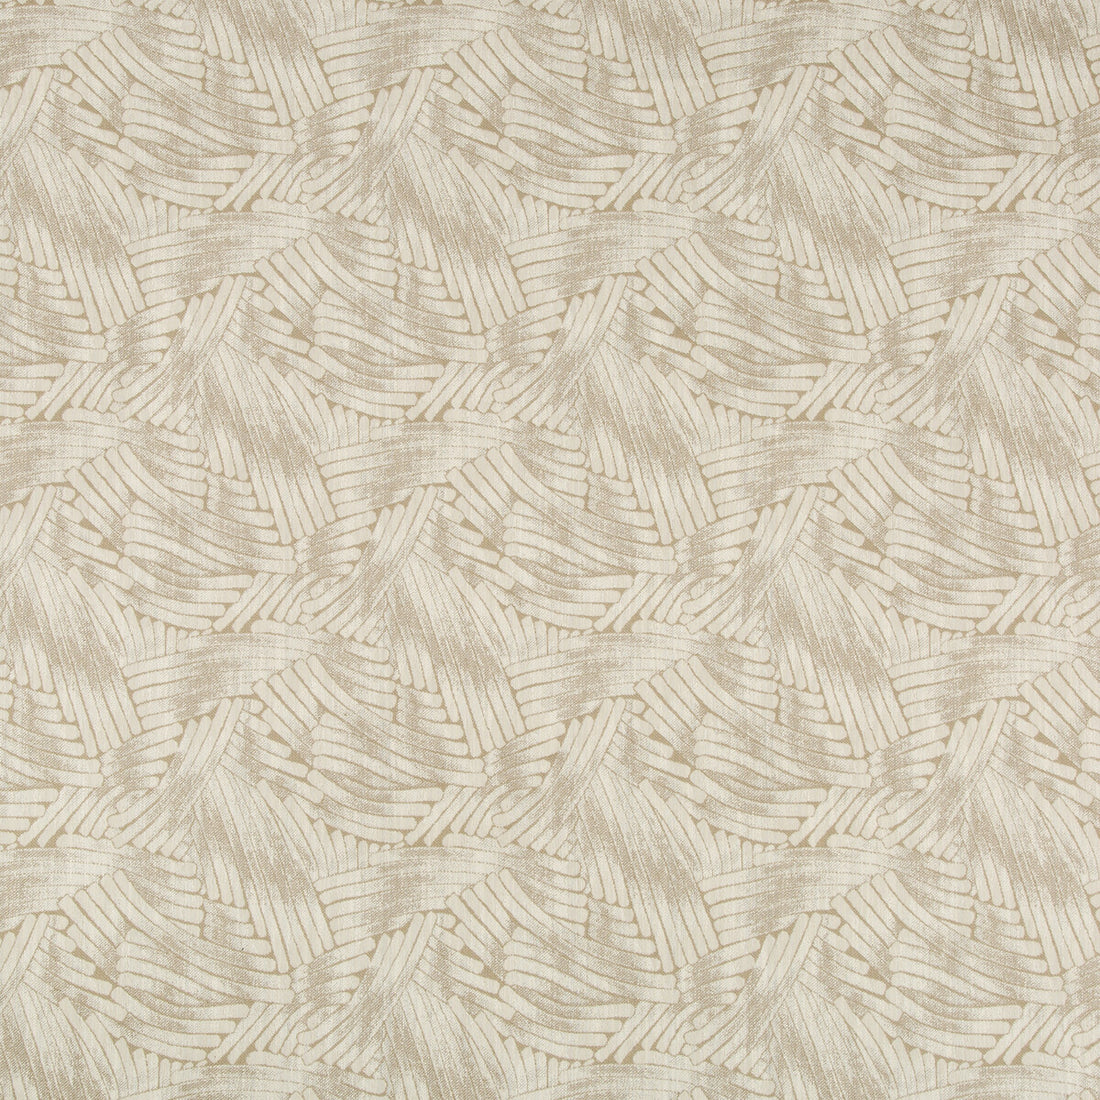 Kravet Design fabric in 35587-16 color - pattern 35587.16.0 - by Kravet Design